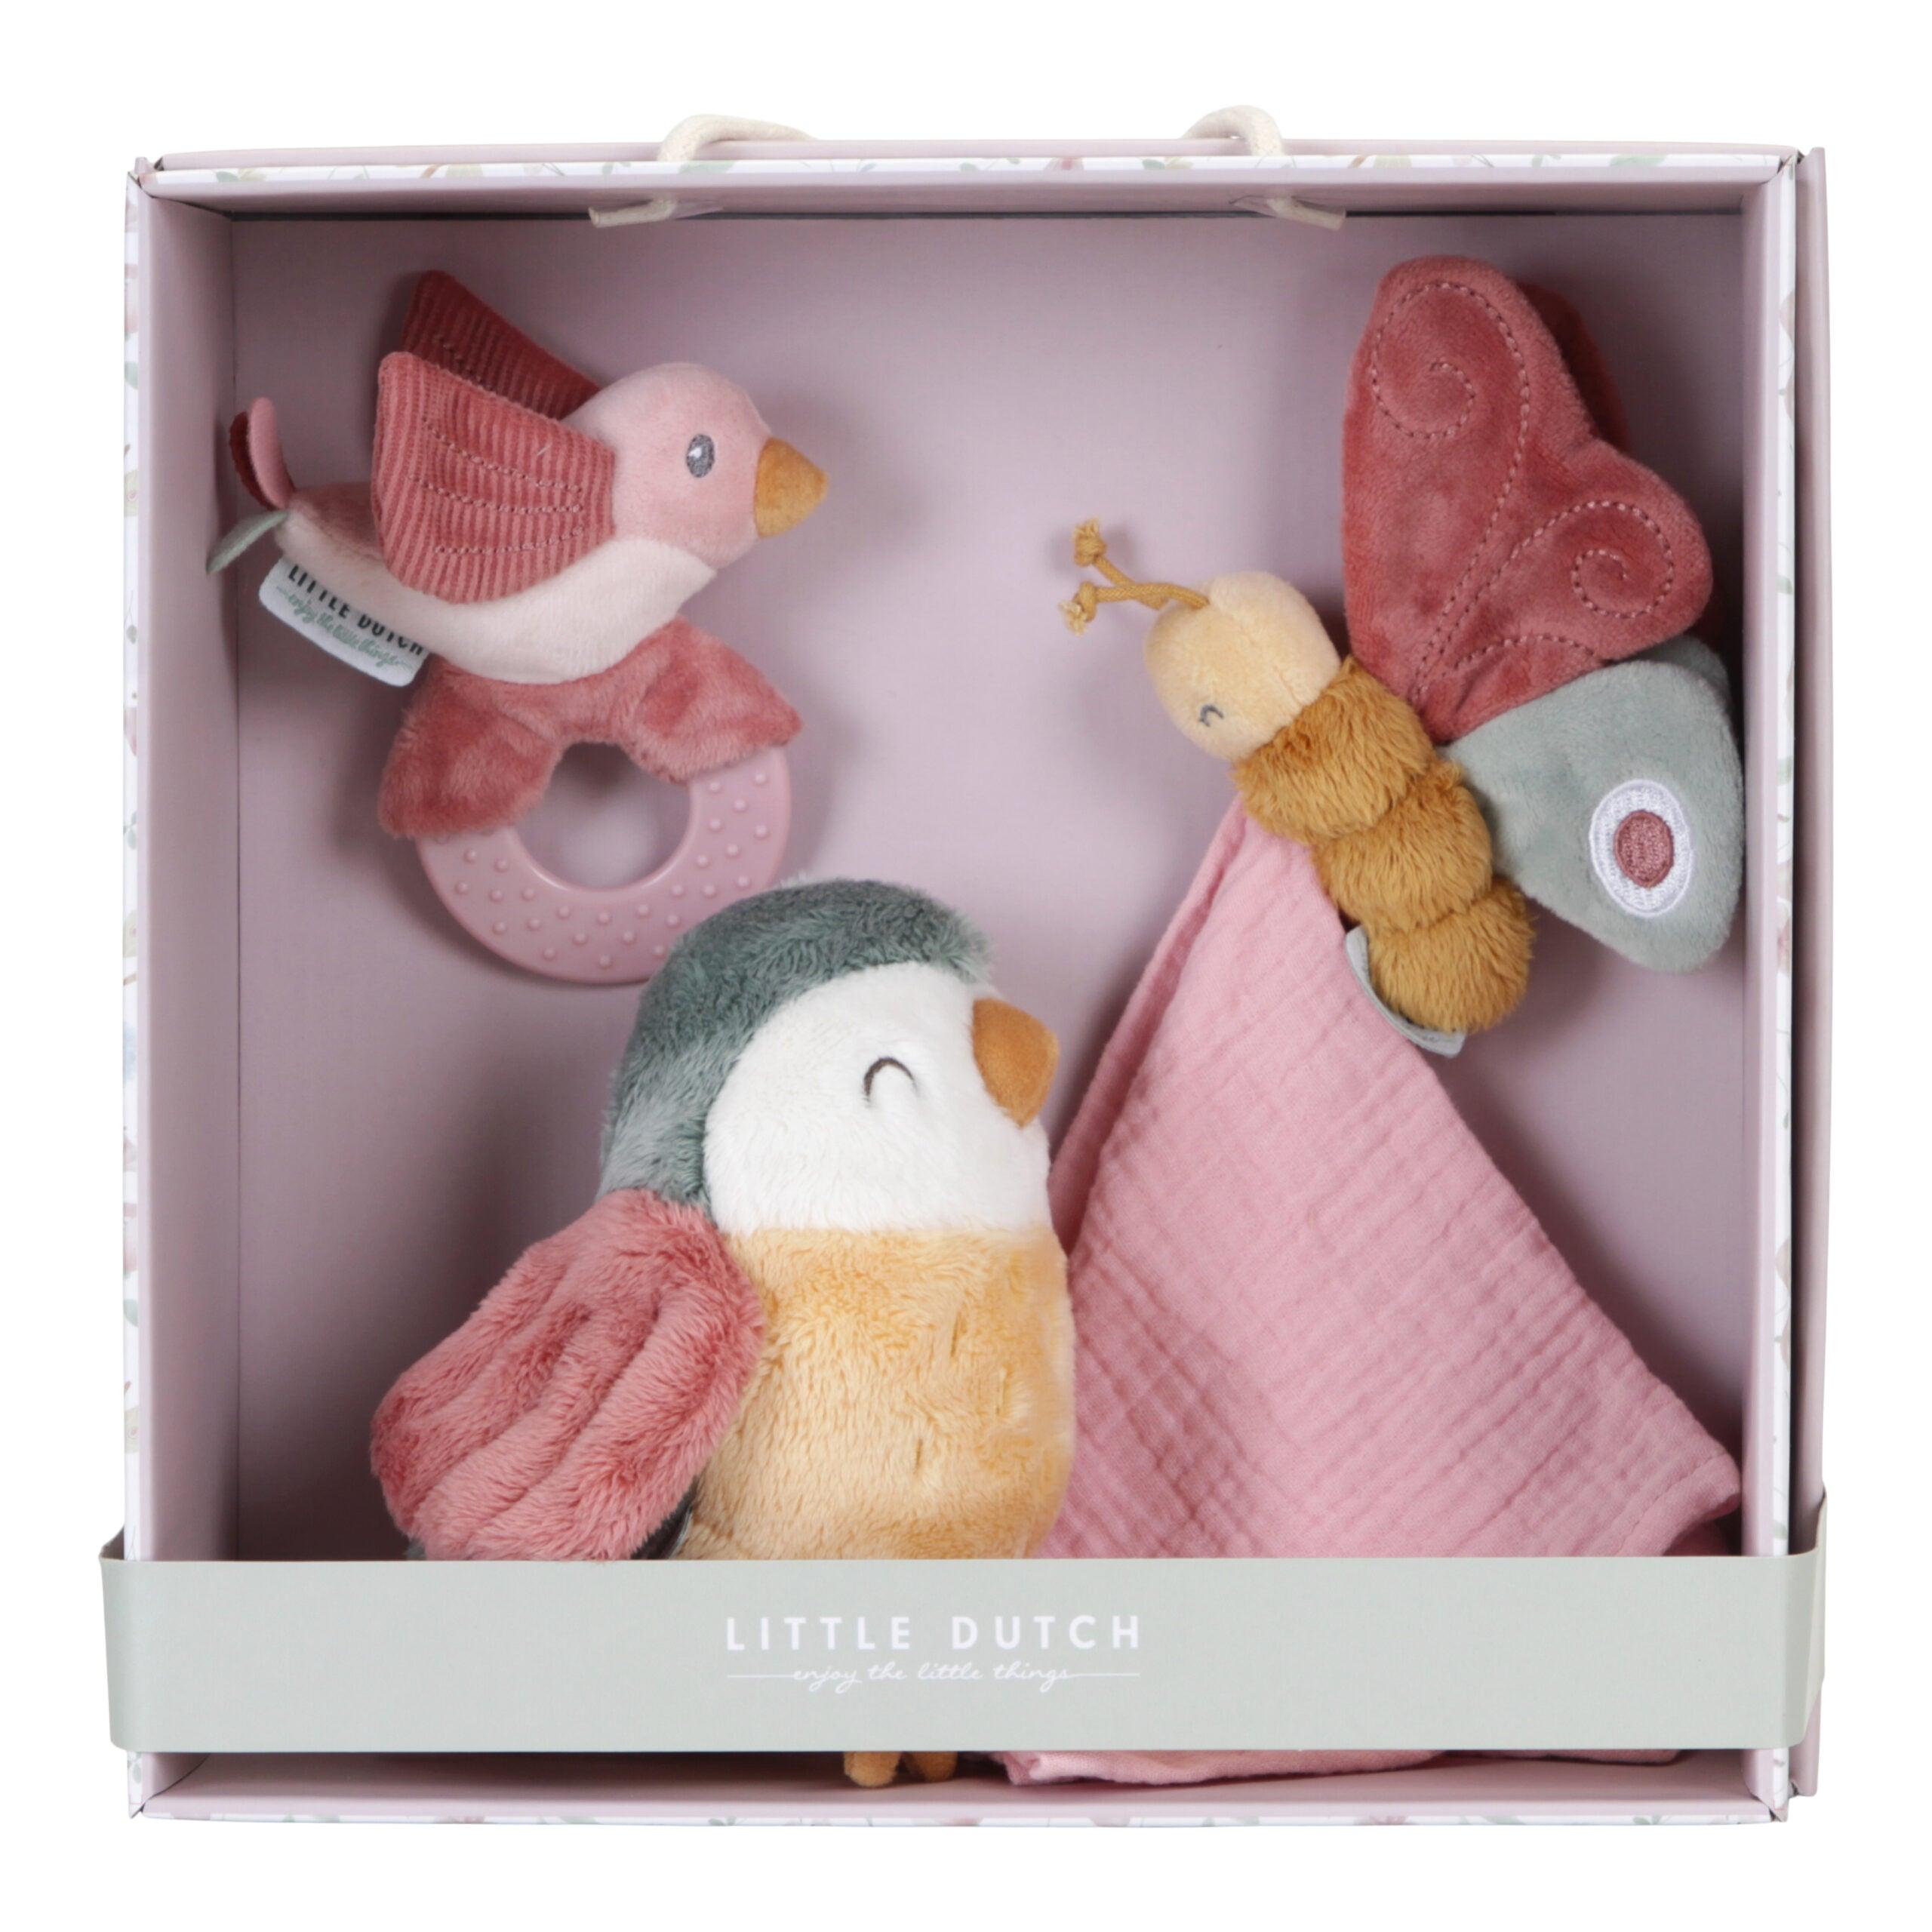 Little Dutch: Flowers & Butterflies baby gift set